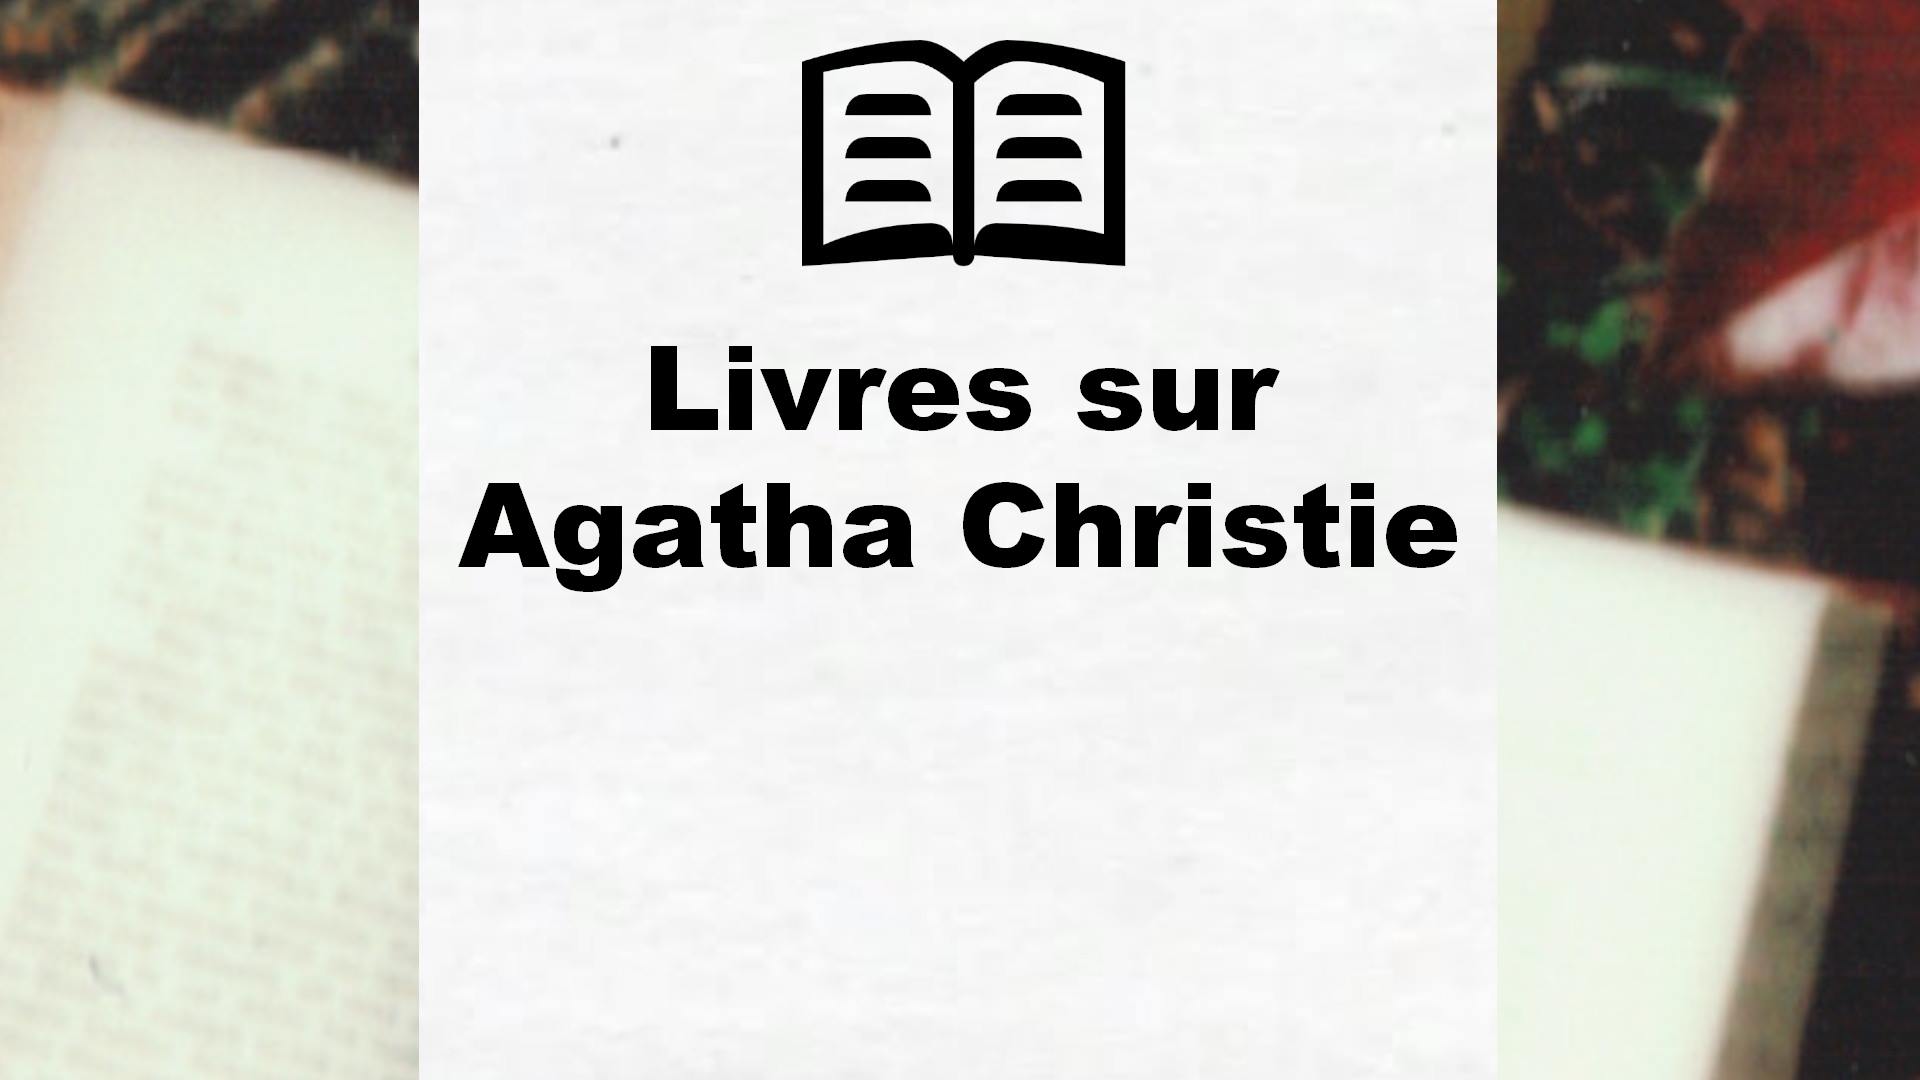 Livres sur Agatha Christie